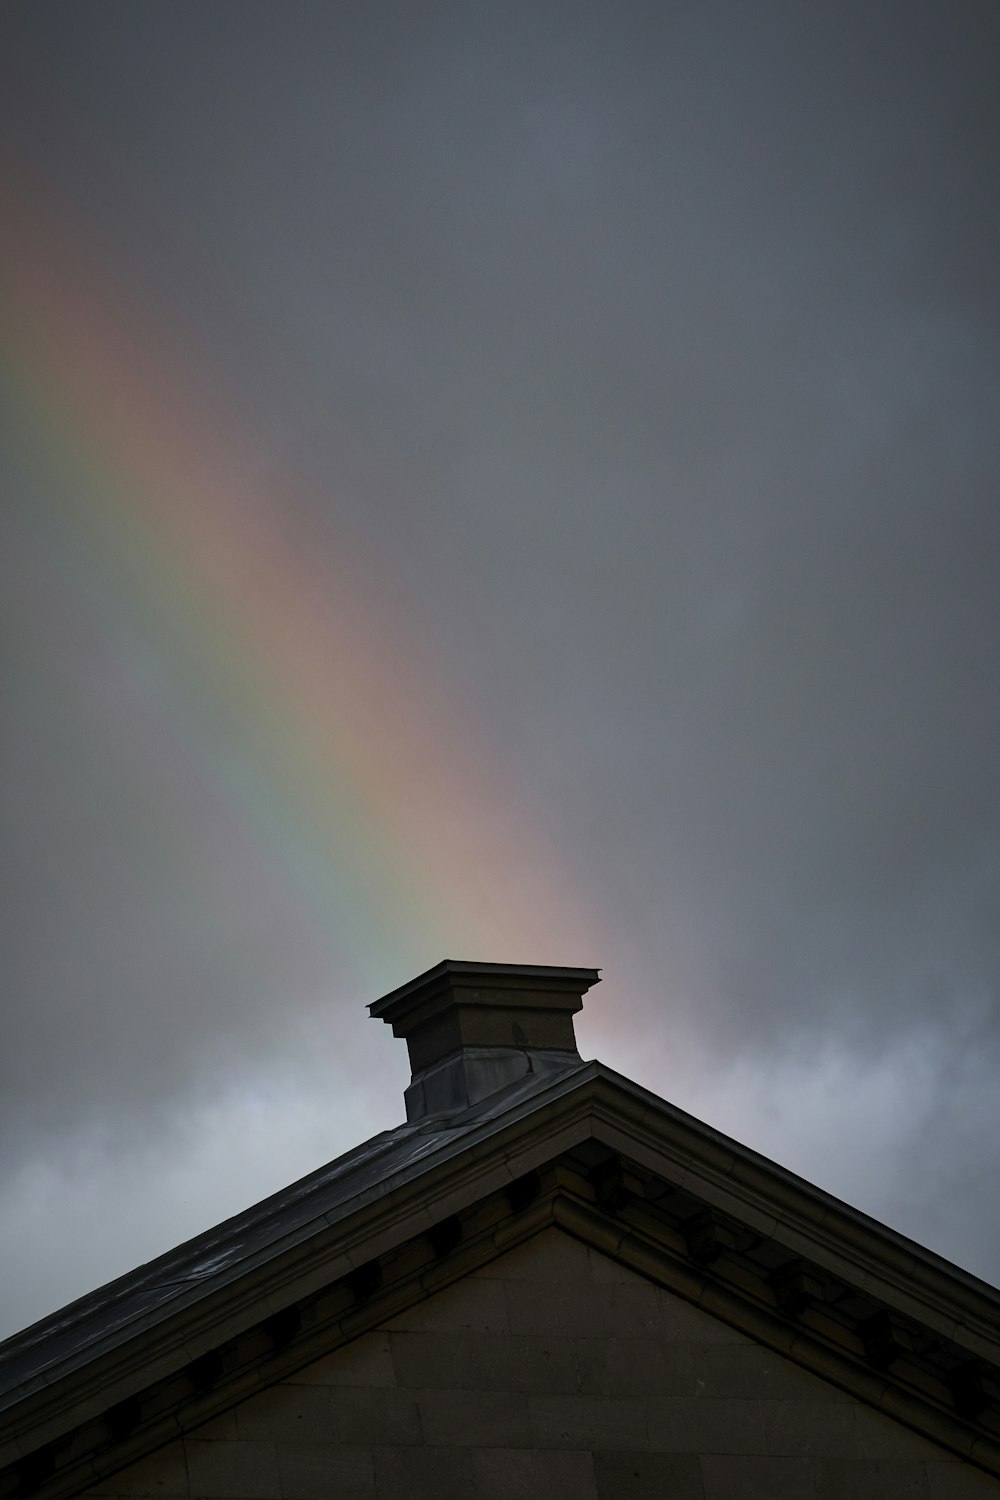 a rainbow over a building